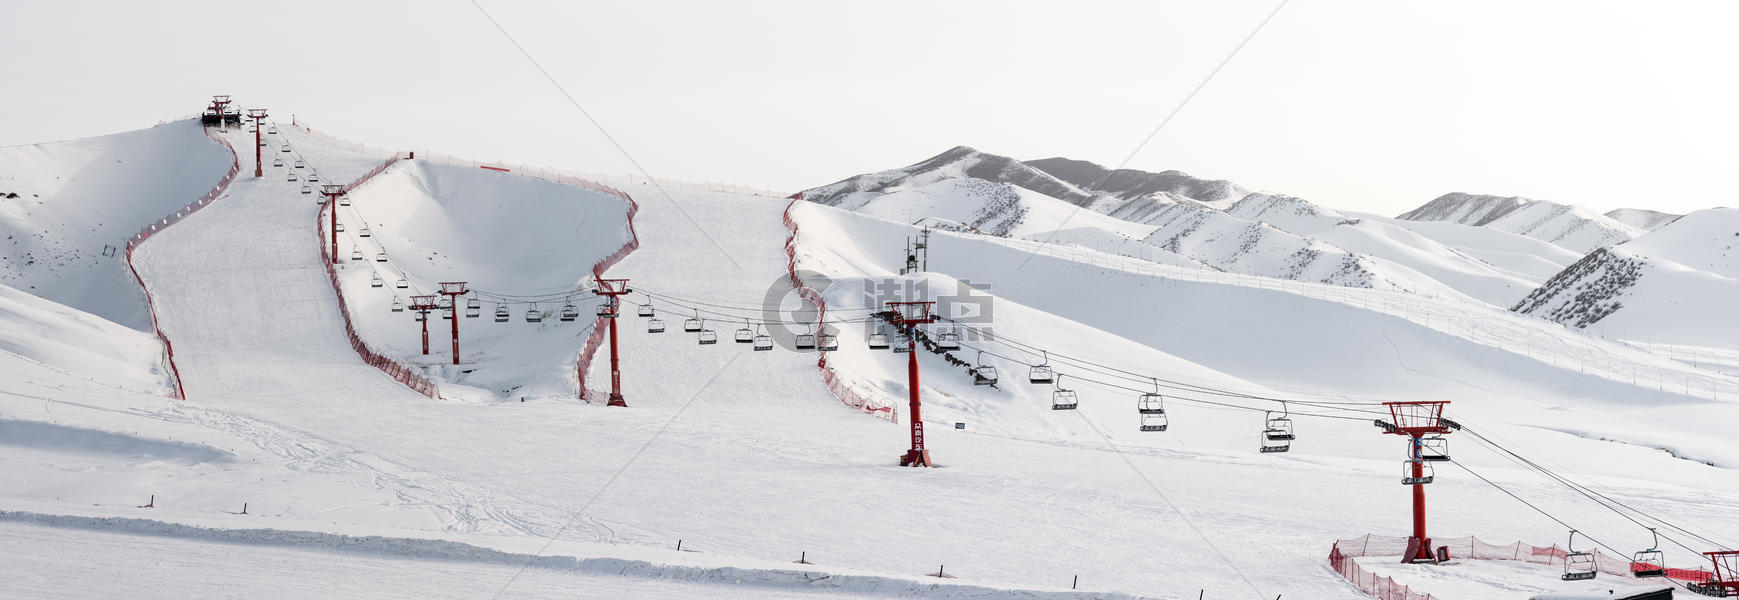 新疆冬季滑雪场模式旅游经济发展特色小镇图片素材免费下载